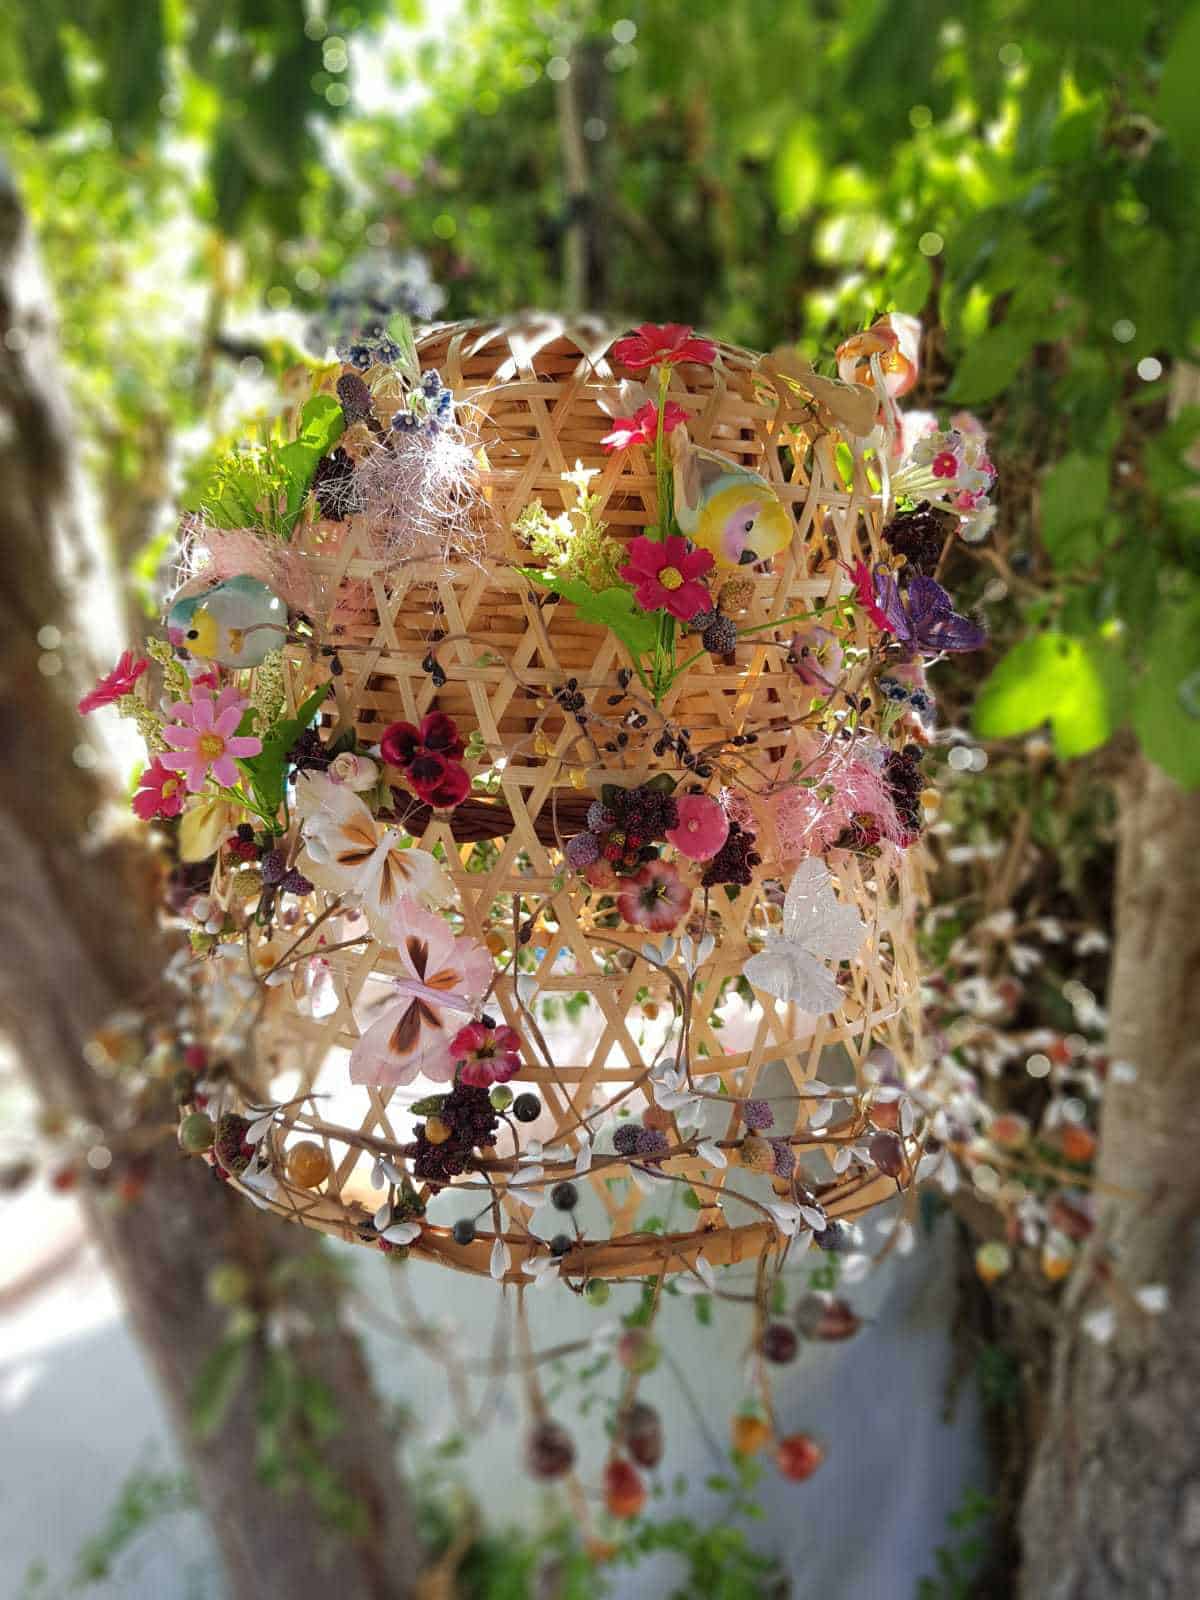 Birds' Nest Lamp